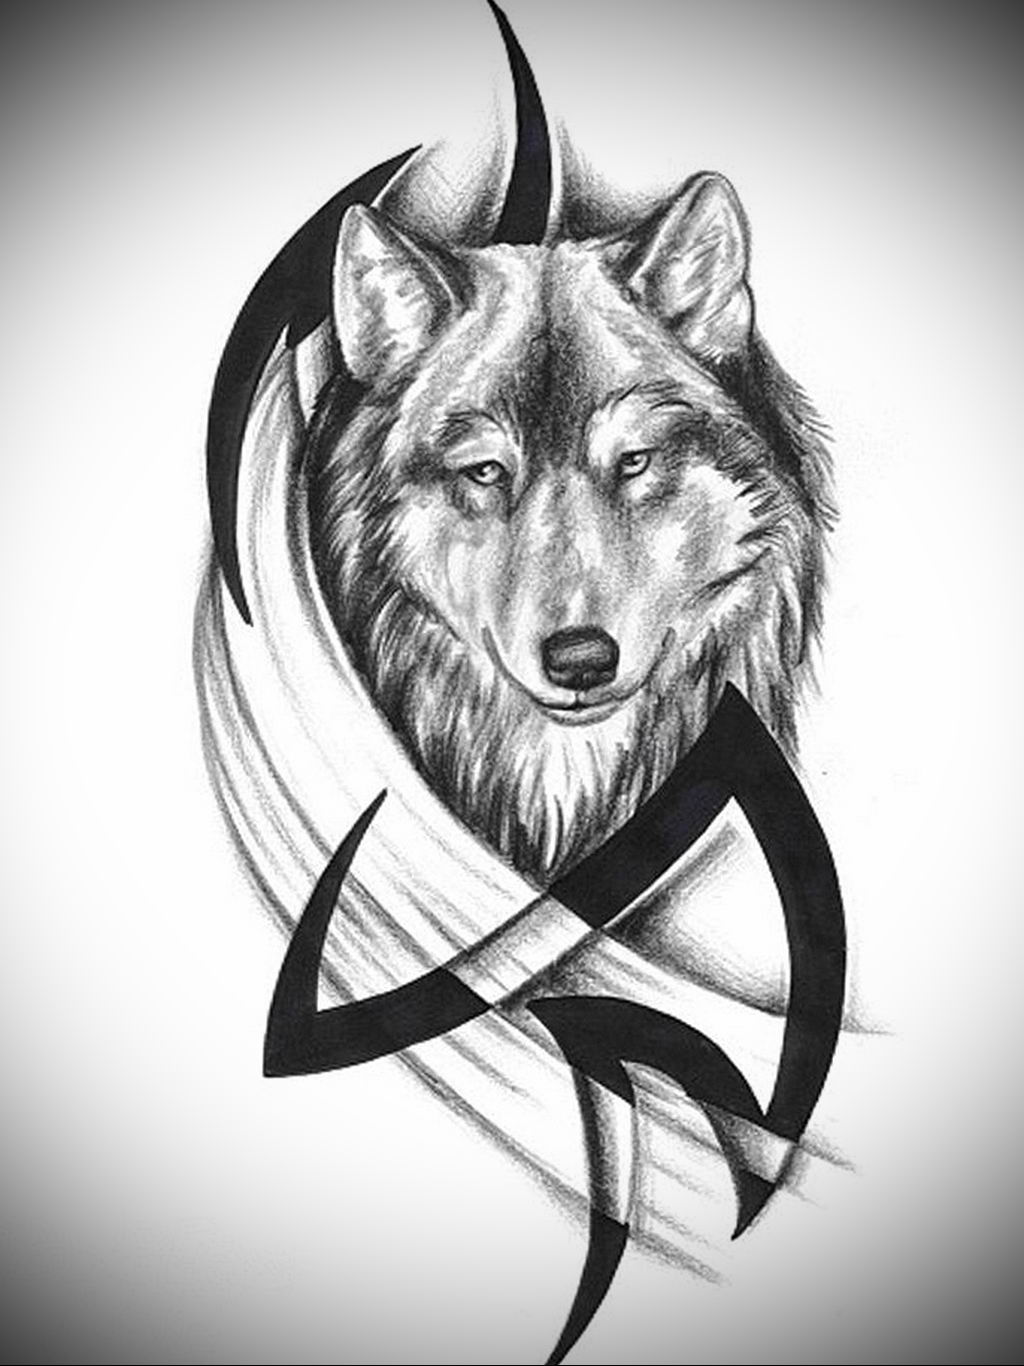 Значение тату волк. популярные стили, фото татуировок и эскизы